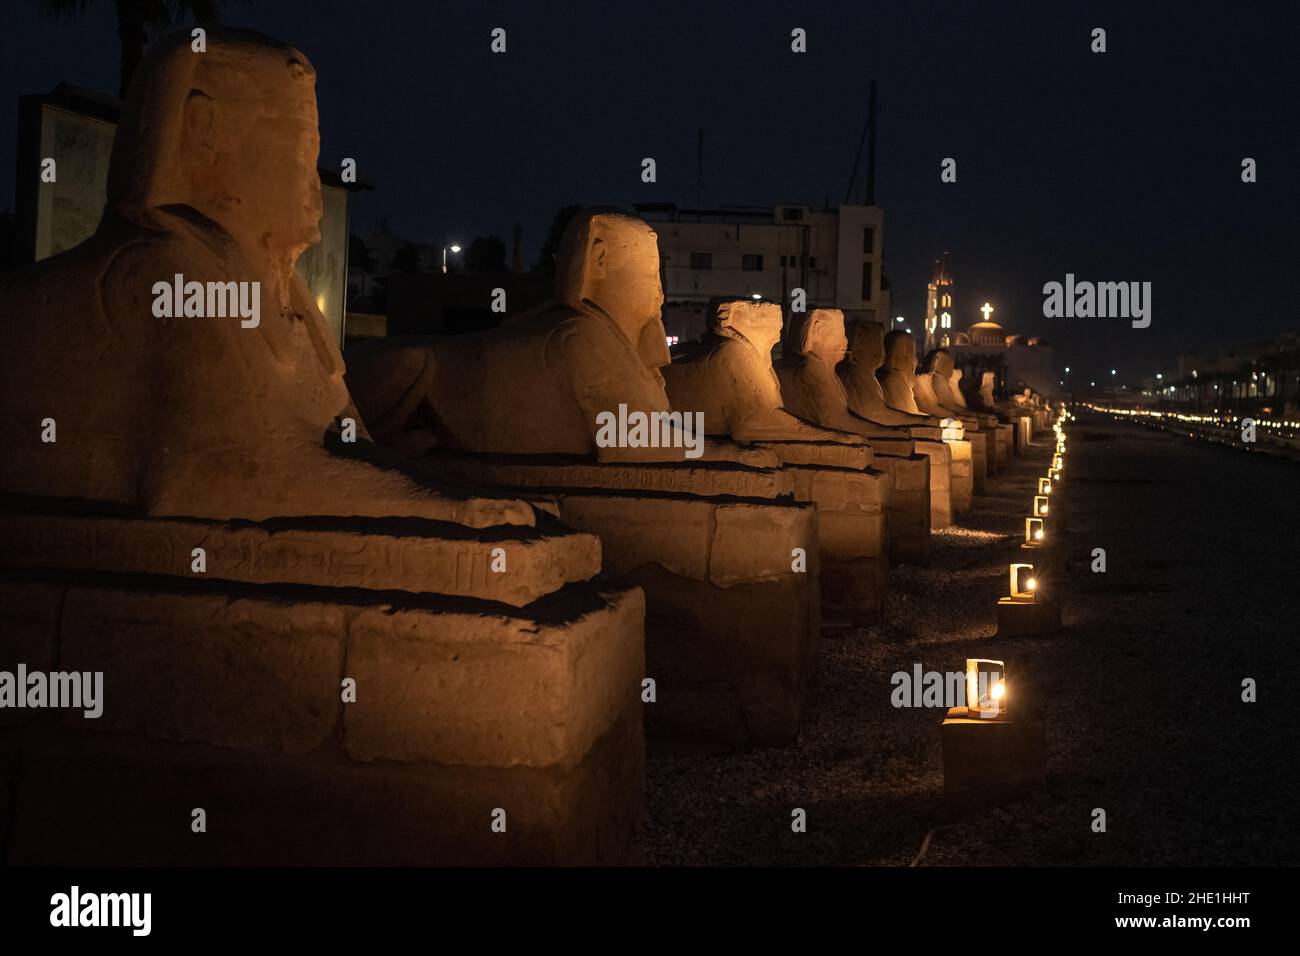 Die Allee der Sphinxes oder RAMS Road (El Kebash), ein historisches Denkmal mit Statuen in Luxor, Ägypten nach Einbruch der Dunkelheit von Lichtern beleuchtet gesäumt. Stockfoto